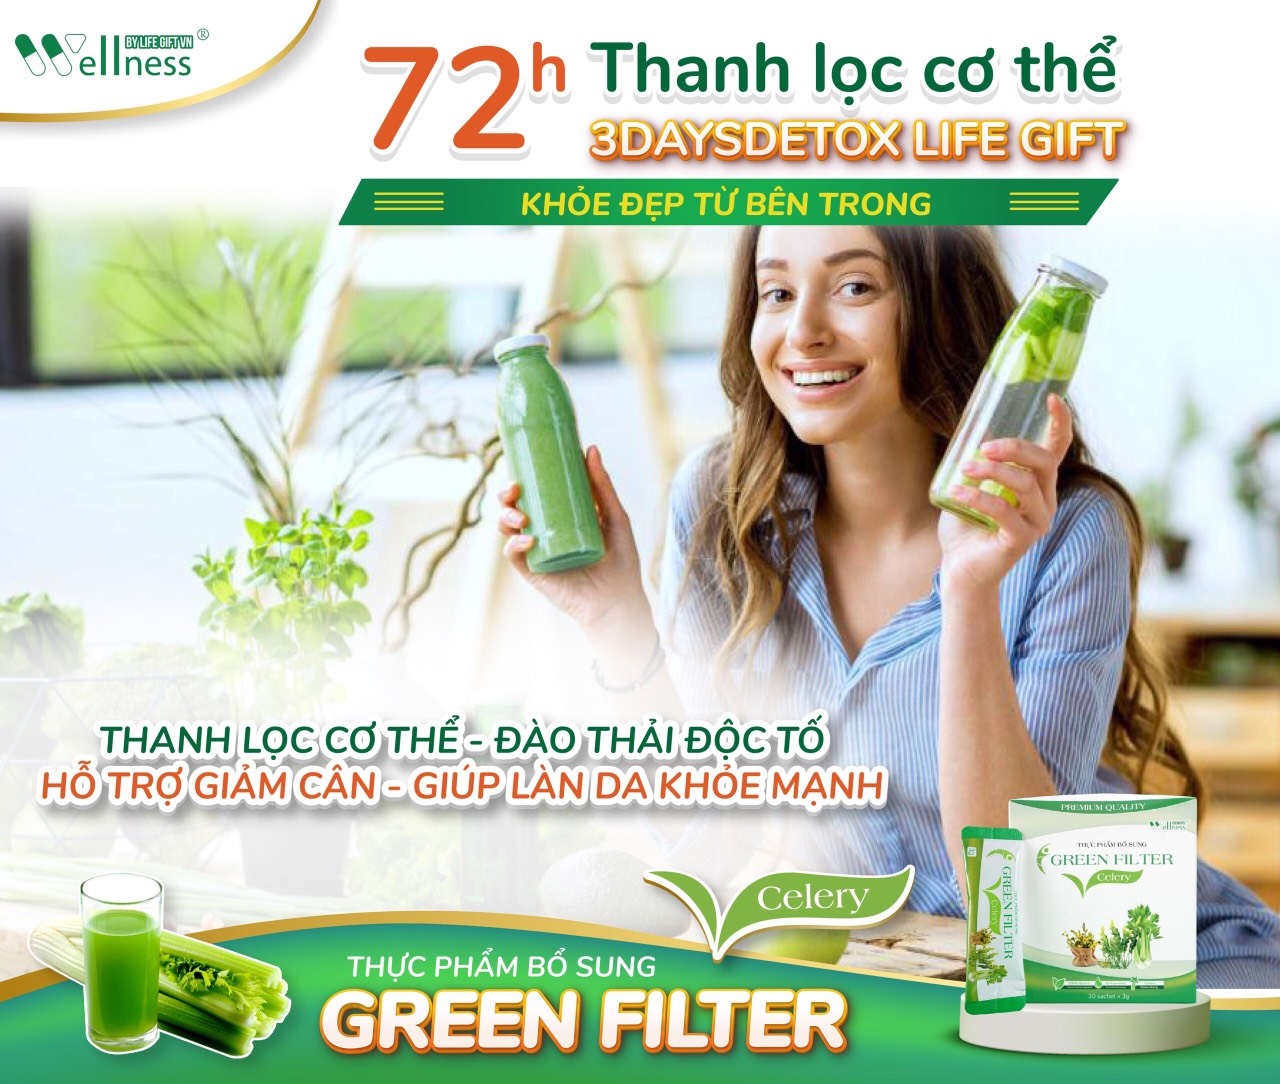 Thực Phẩm Bổ Sung Bột Cần Tây Sấy Lạnh Diệp Lục Green Filter Celery